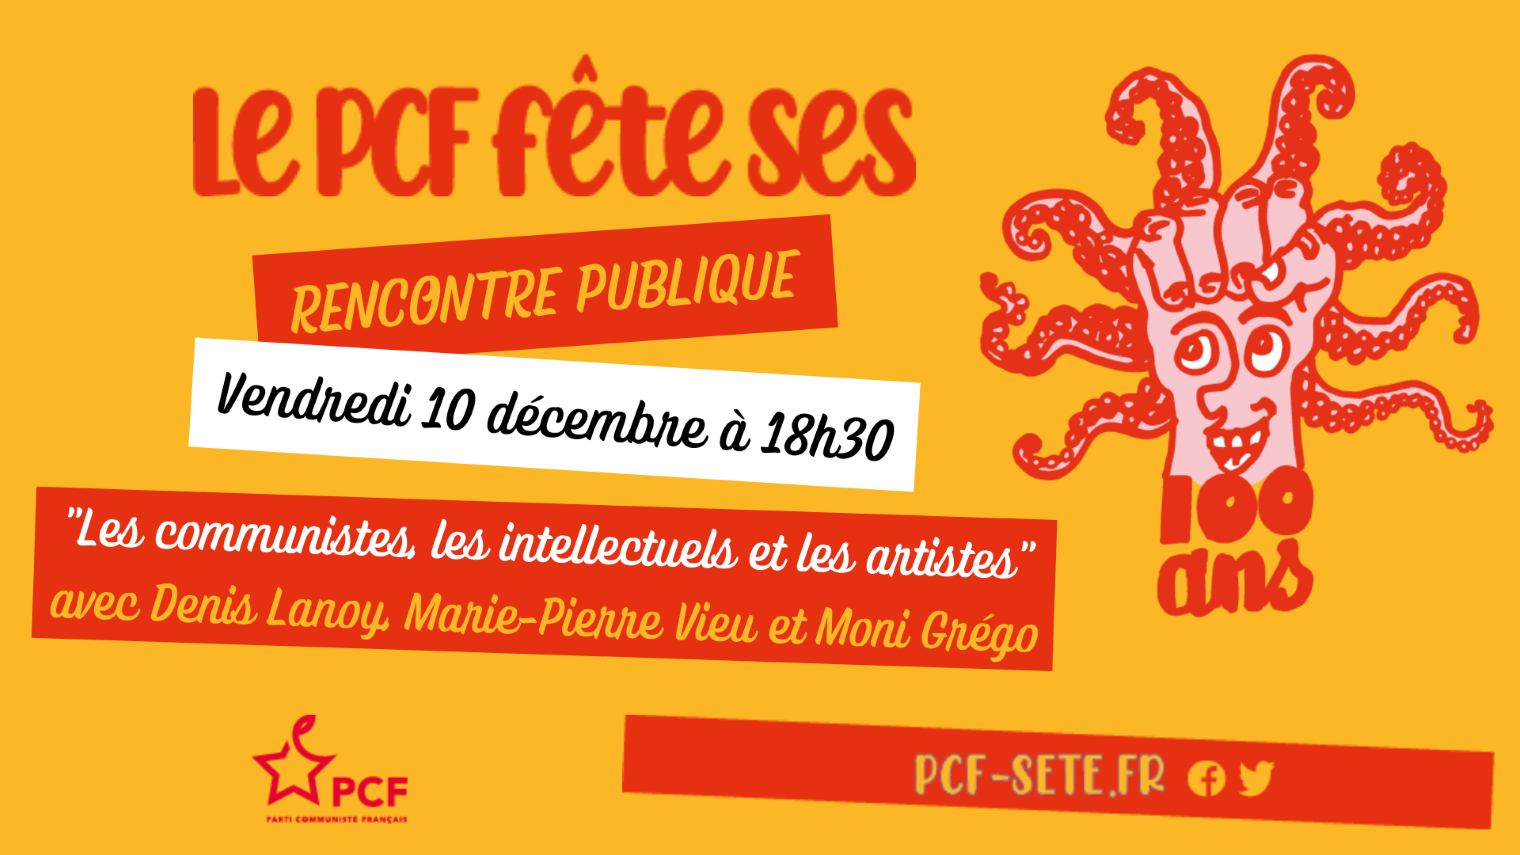 Sète - Une rencontre publique dans le cadre des 100 ans du PCF